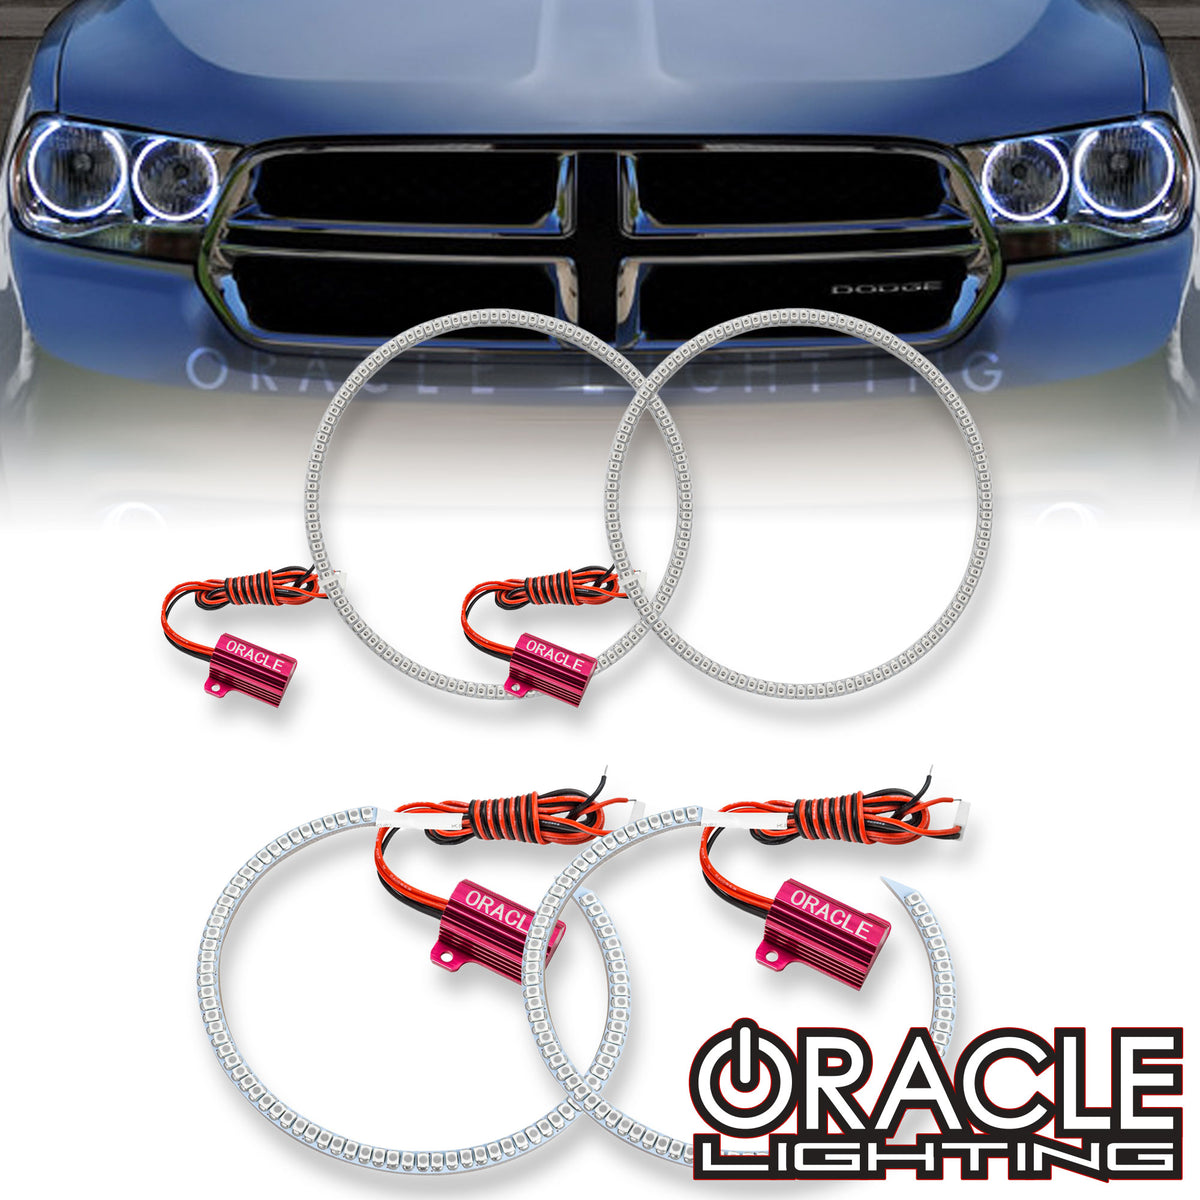 2011-2013 Dodge Durango LED Headlight Halo Kit | ORACLE Lighting